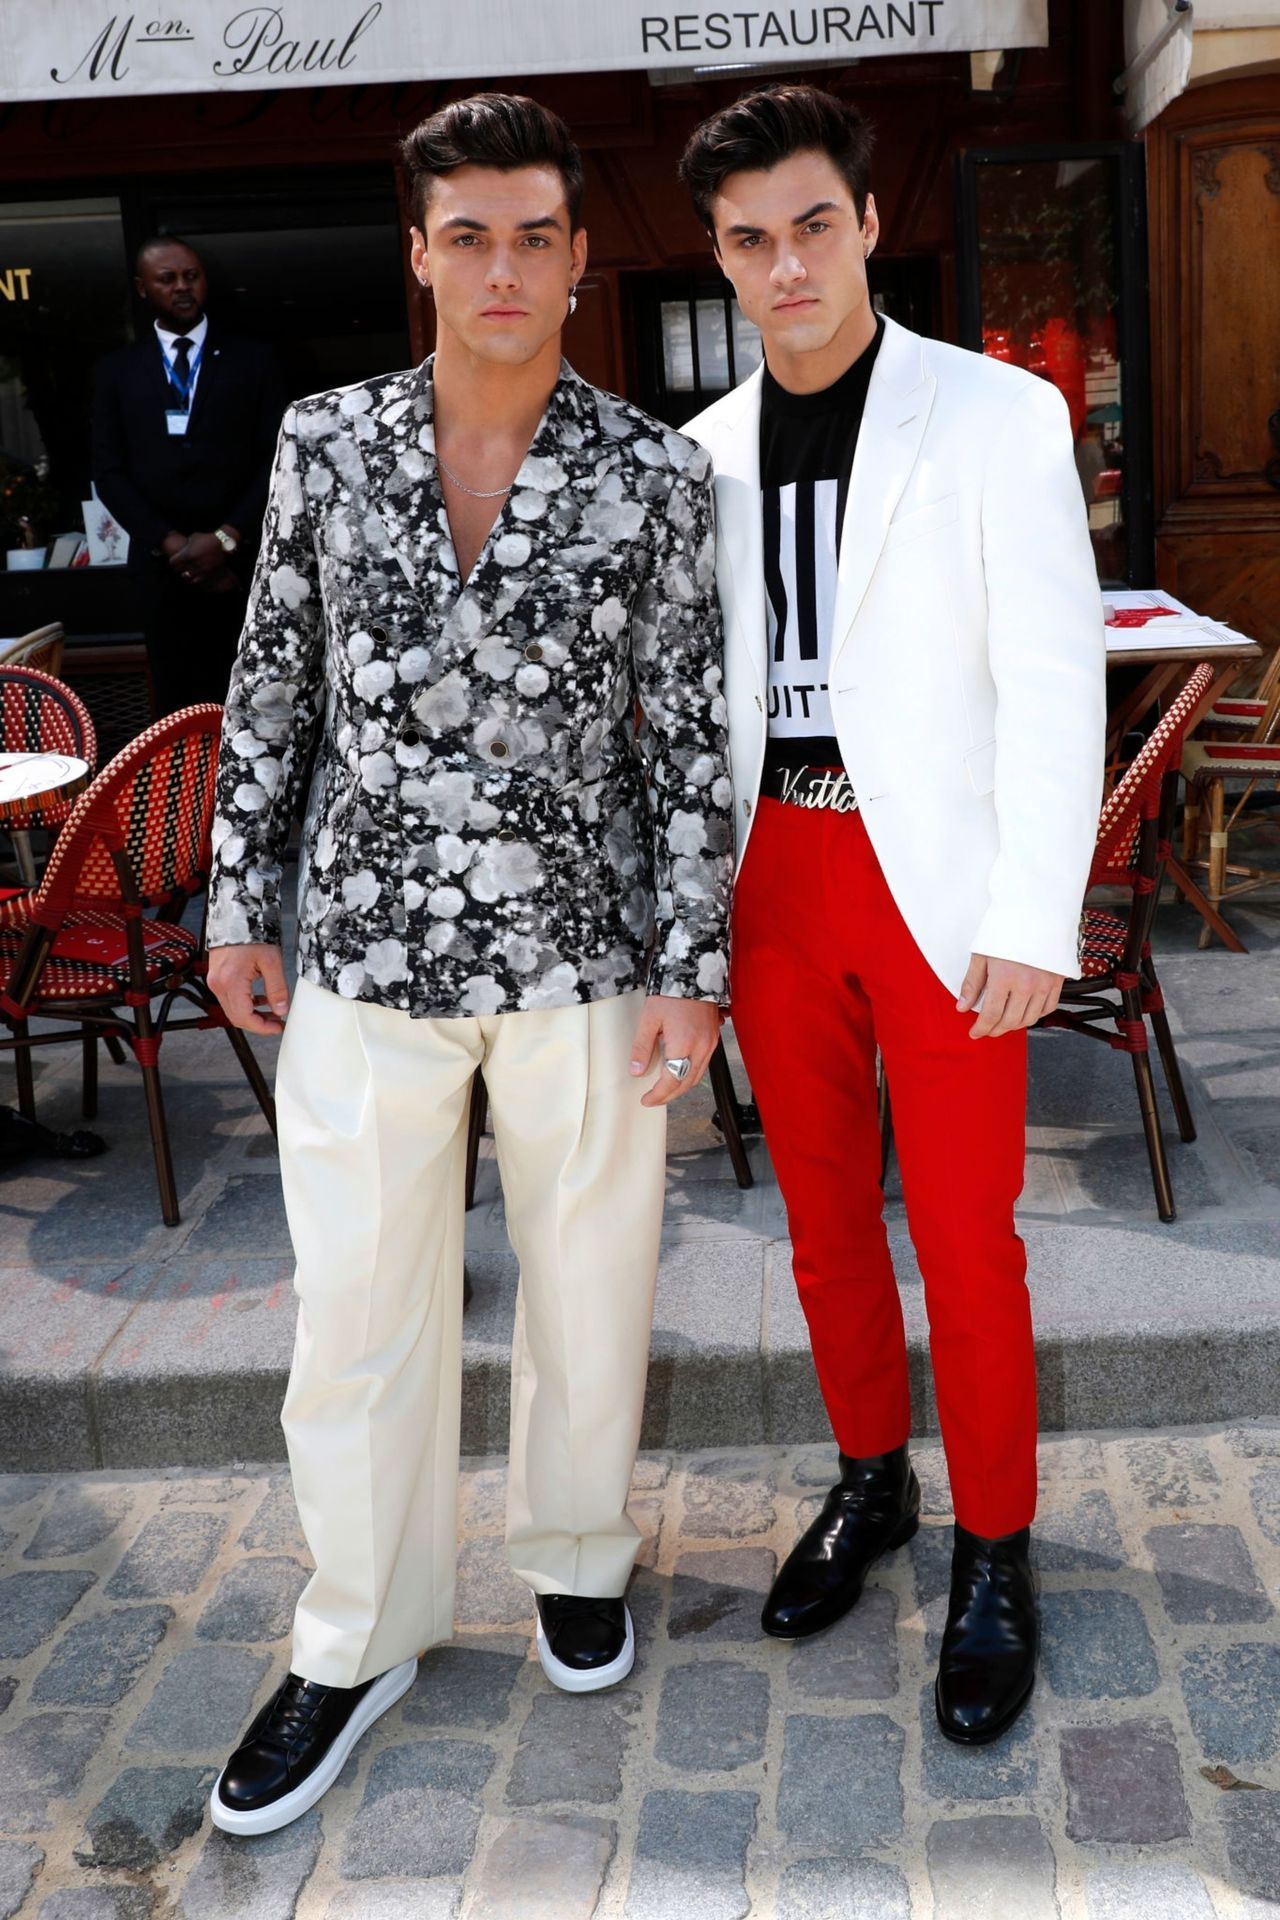 [celeb photos] Dolan Twins attend Louis Vuitton fashion show in Paris - Celebria - ATRL